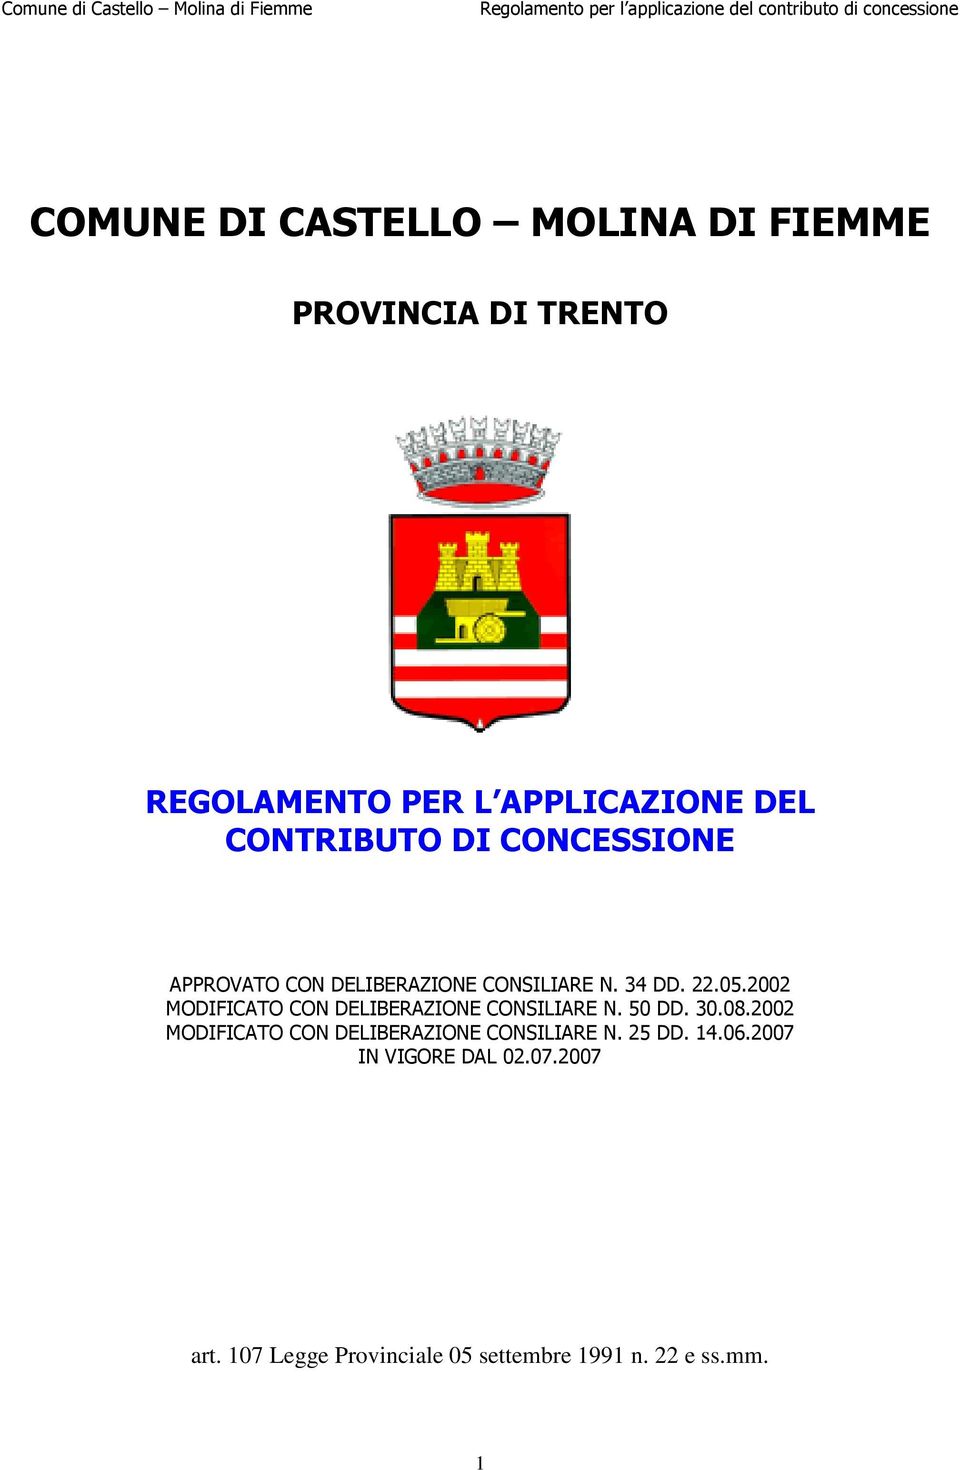 2002 MODIFICATO CON DELIBERAZIONE CONSILIARE N. 50 DD. 30.08.